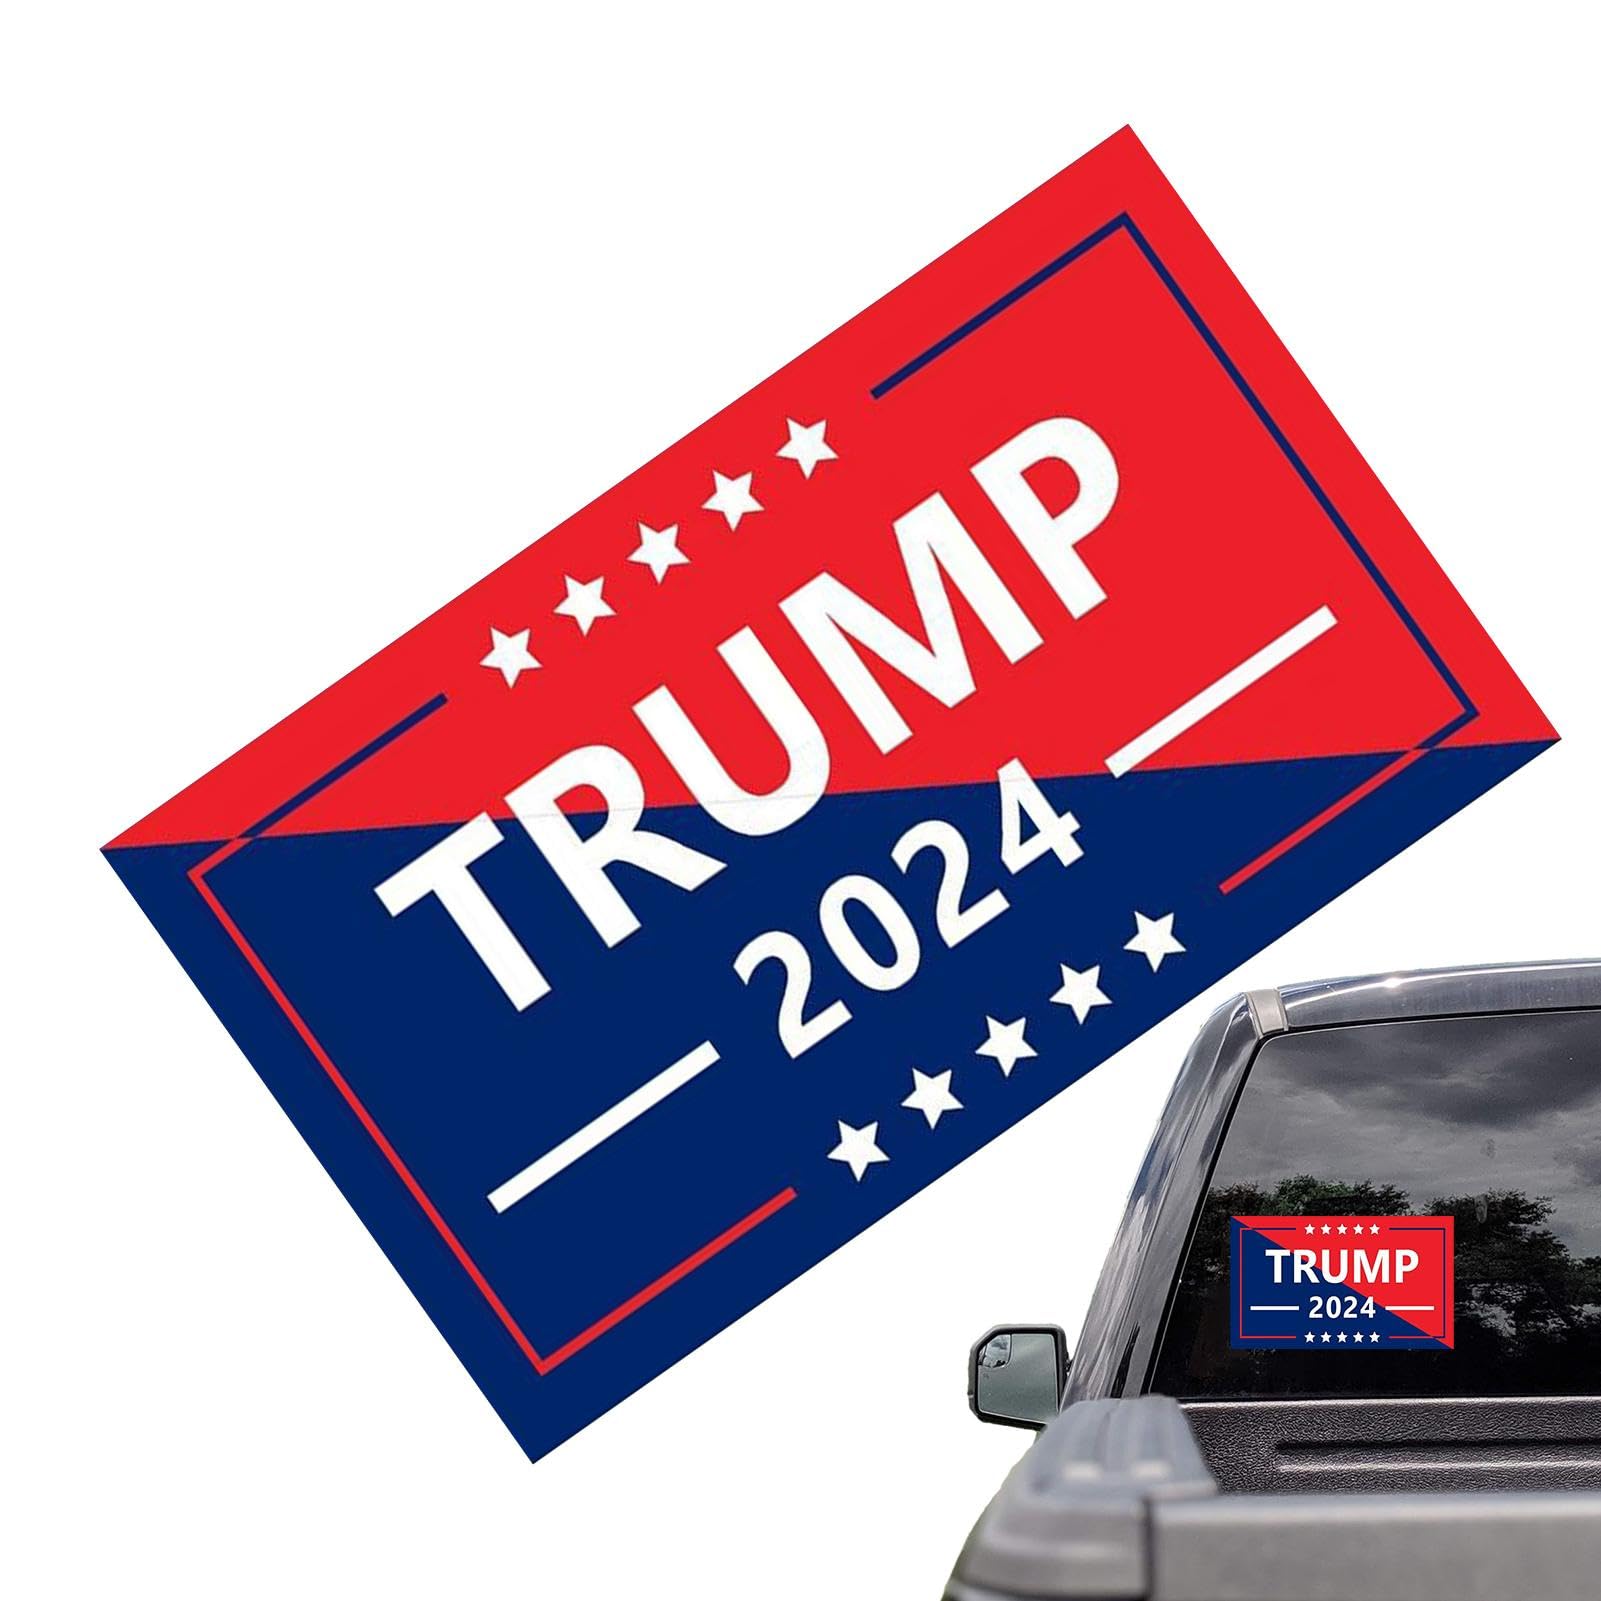 Trump Autoaufkleber 2024,Trump 2024 Autoaufkleber,Trump 2024 Take America Back Aufkleber | Selbstklebender, antihaftbeschichteter Stoßstangenaufkleber, langlebiger, wasserfester Fensteraufkleber für F von LearnLyrics